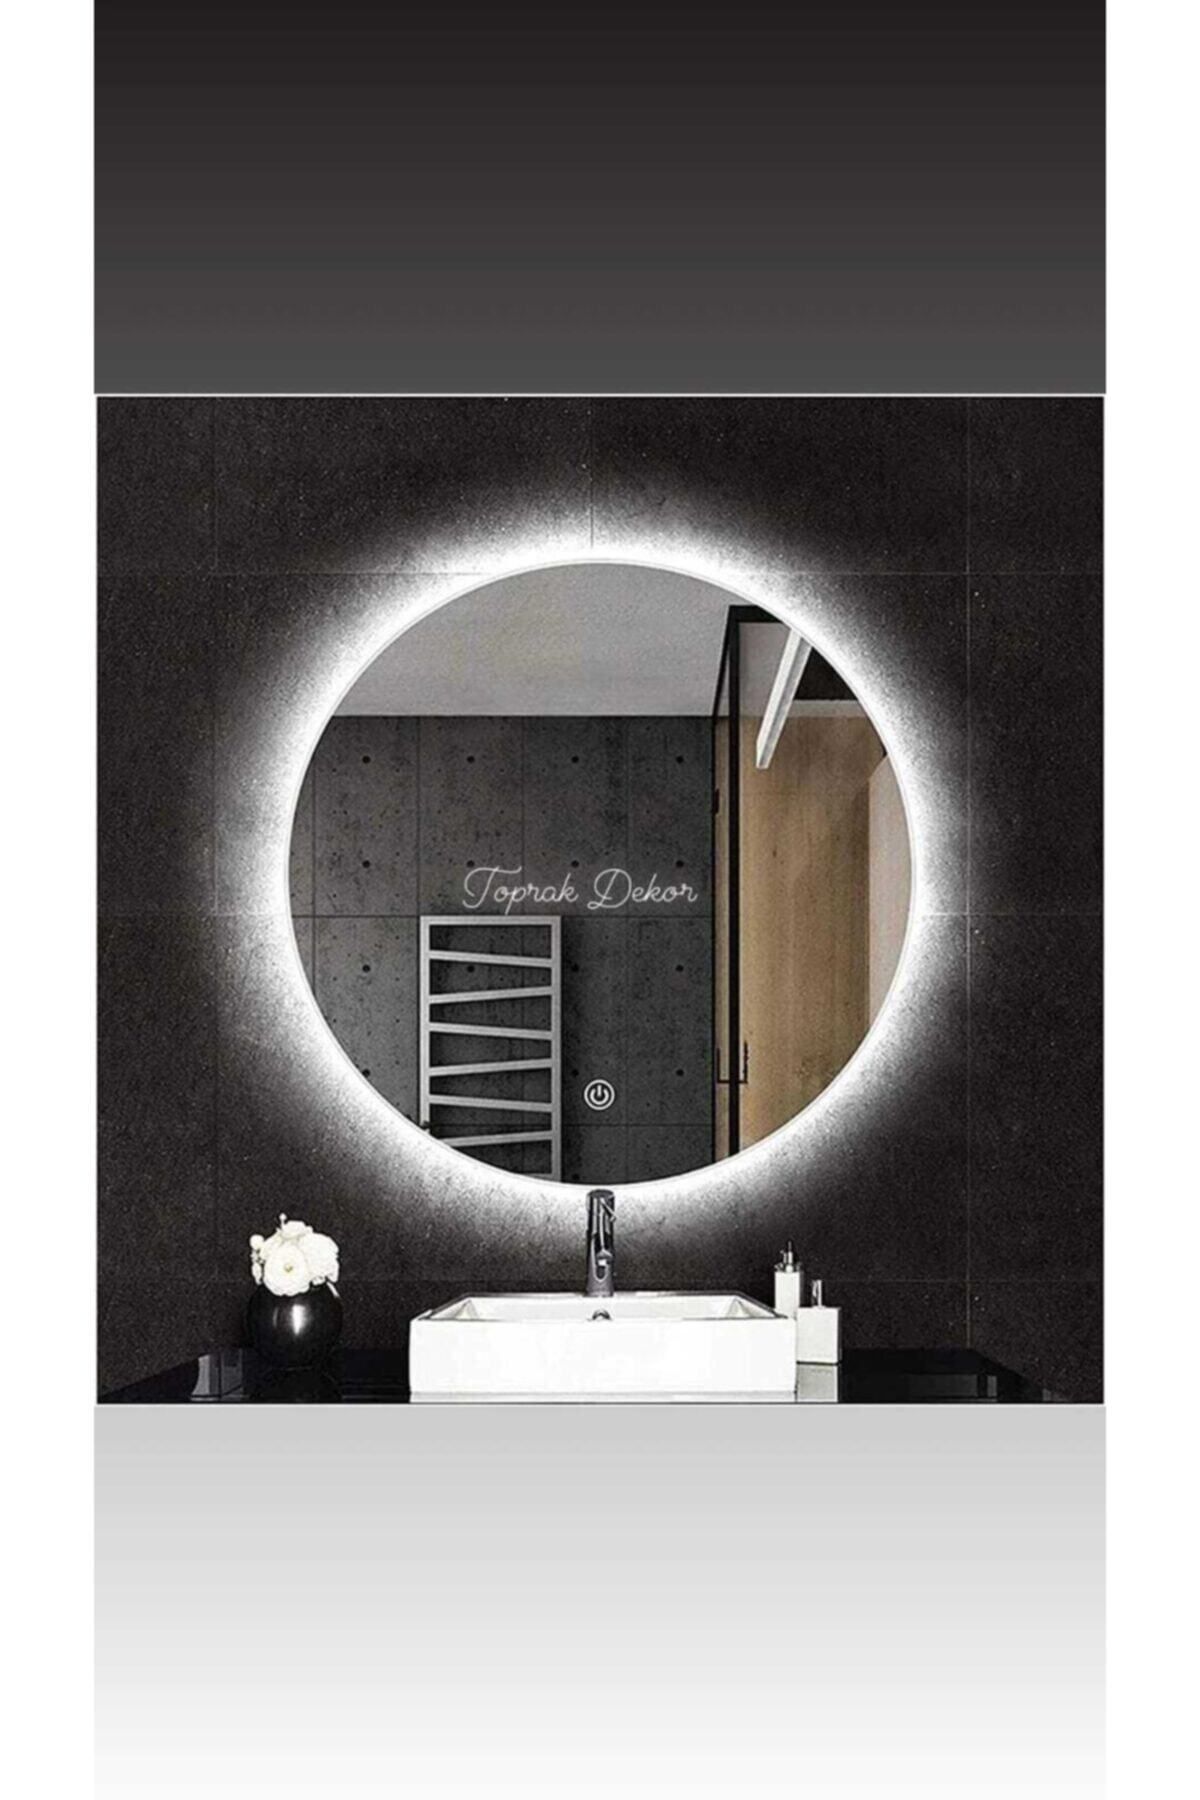 Toprak dekor 60 Cm Dokunmatik (DİMMER ÖZELLİKLİ) Günışığı Ledli Banyo Aynası Ledli Ayna